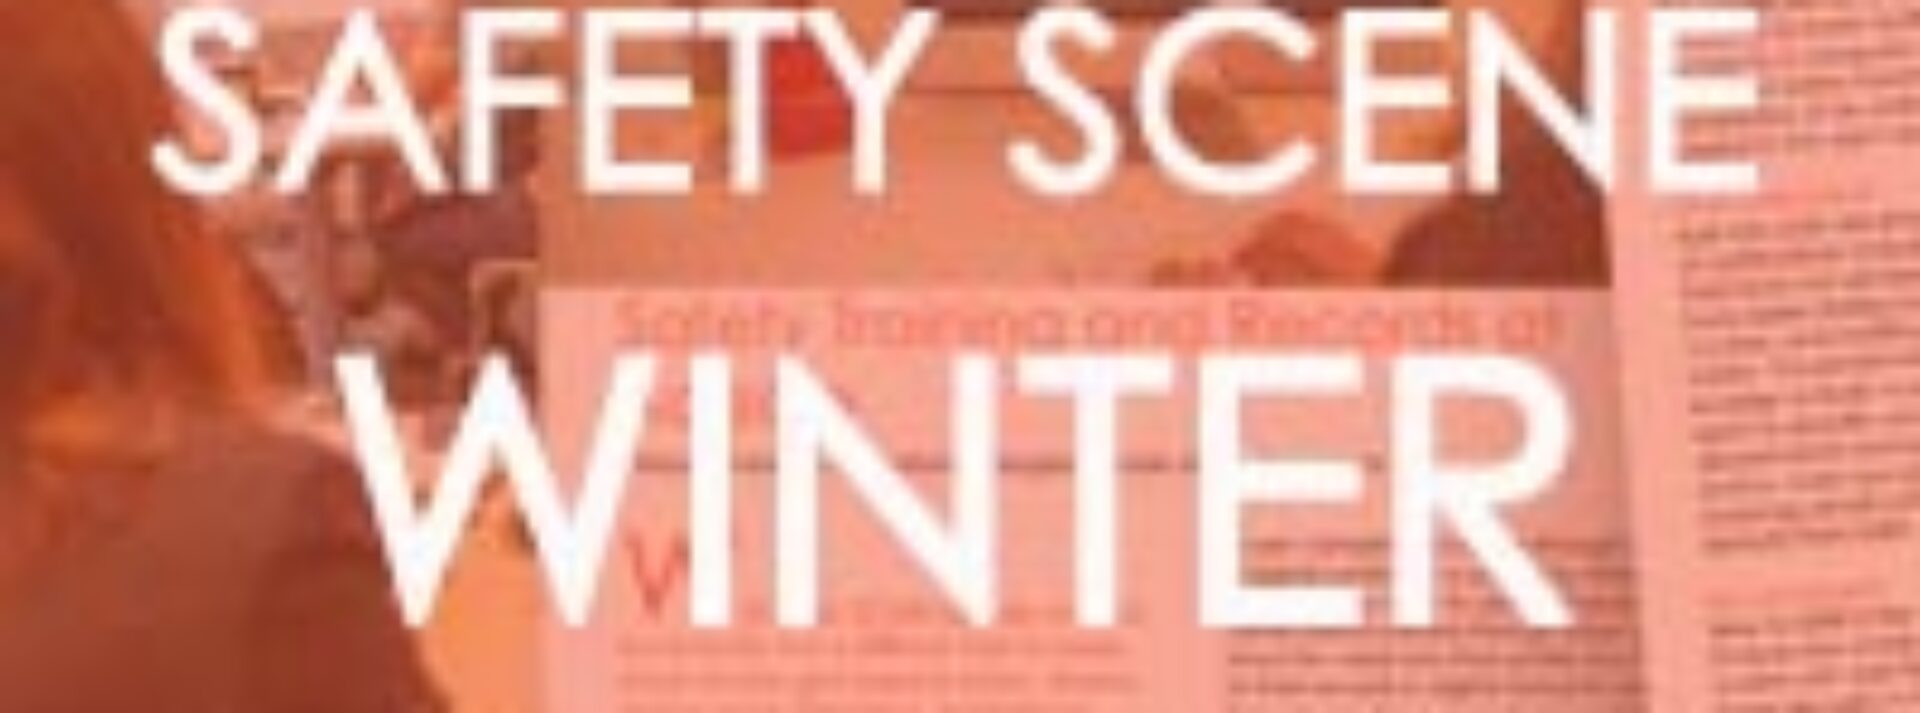 SAFETY-SCENE-WINTER-EDITION-JAN-2020-THUMBNAIL